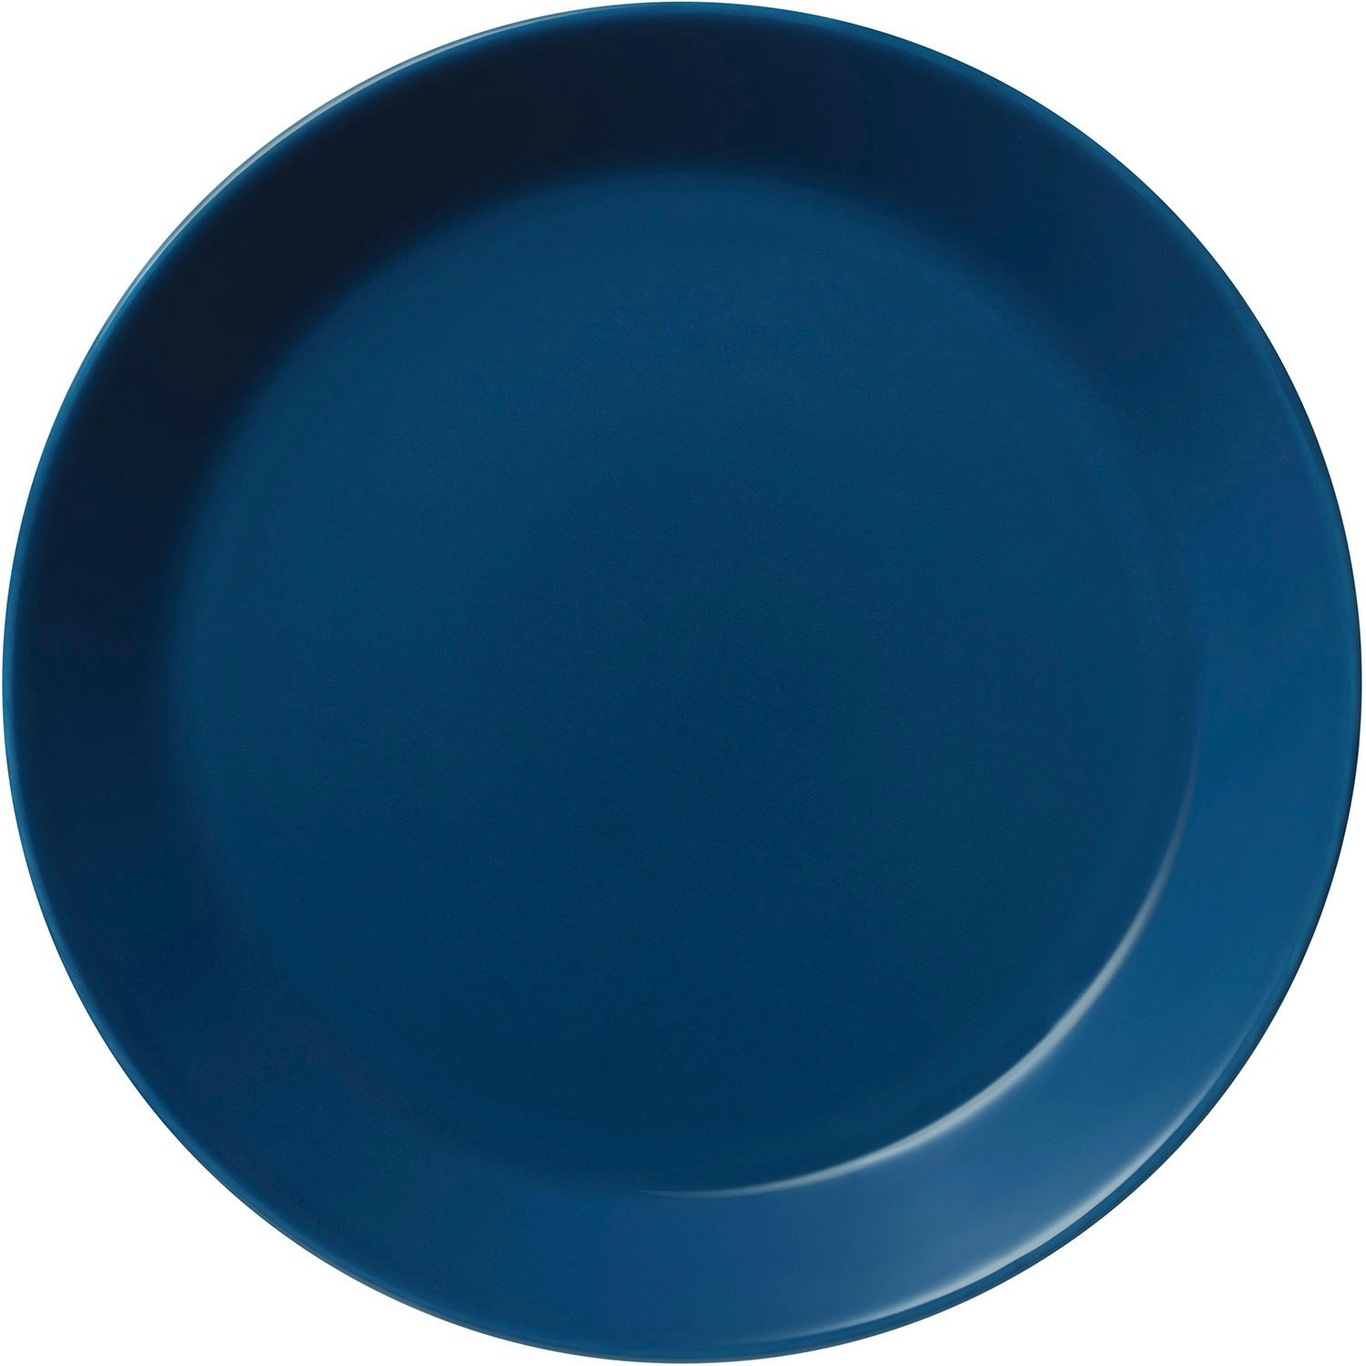 Teema Bord 23 cm, Vintage Blue